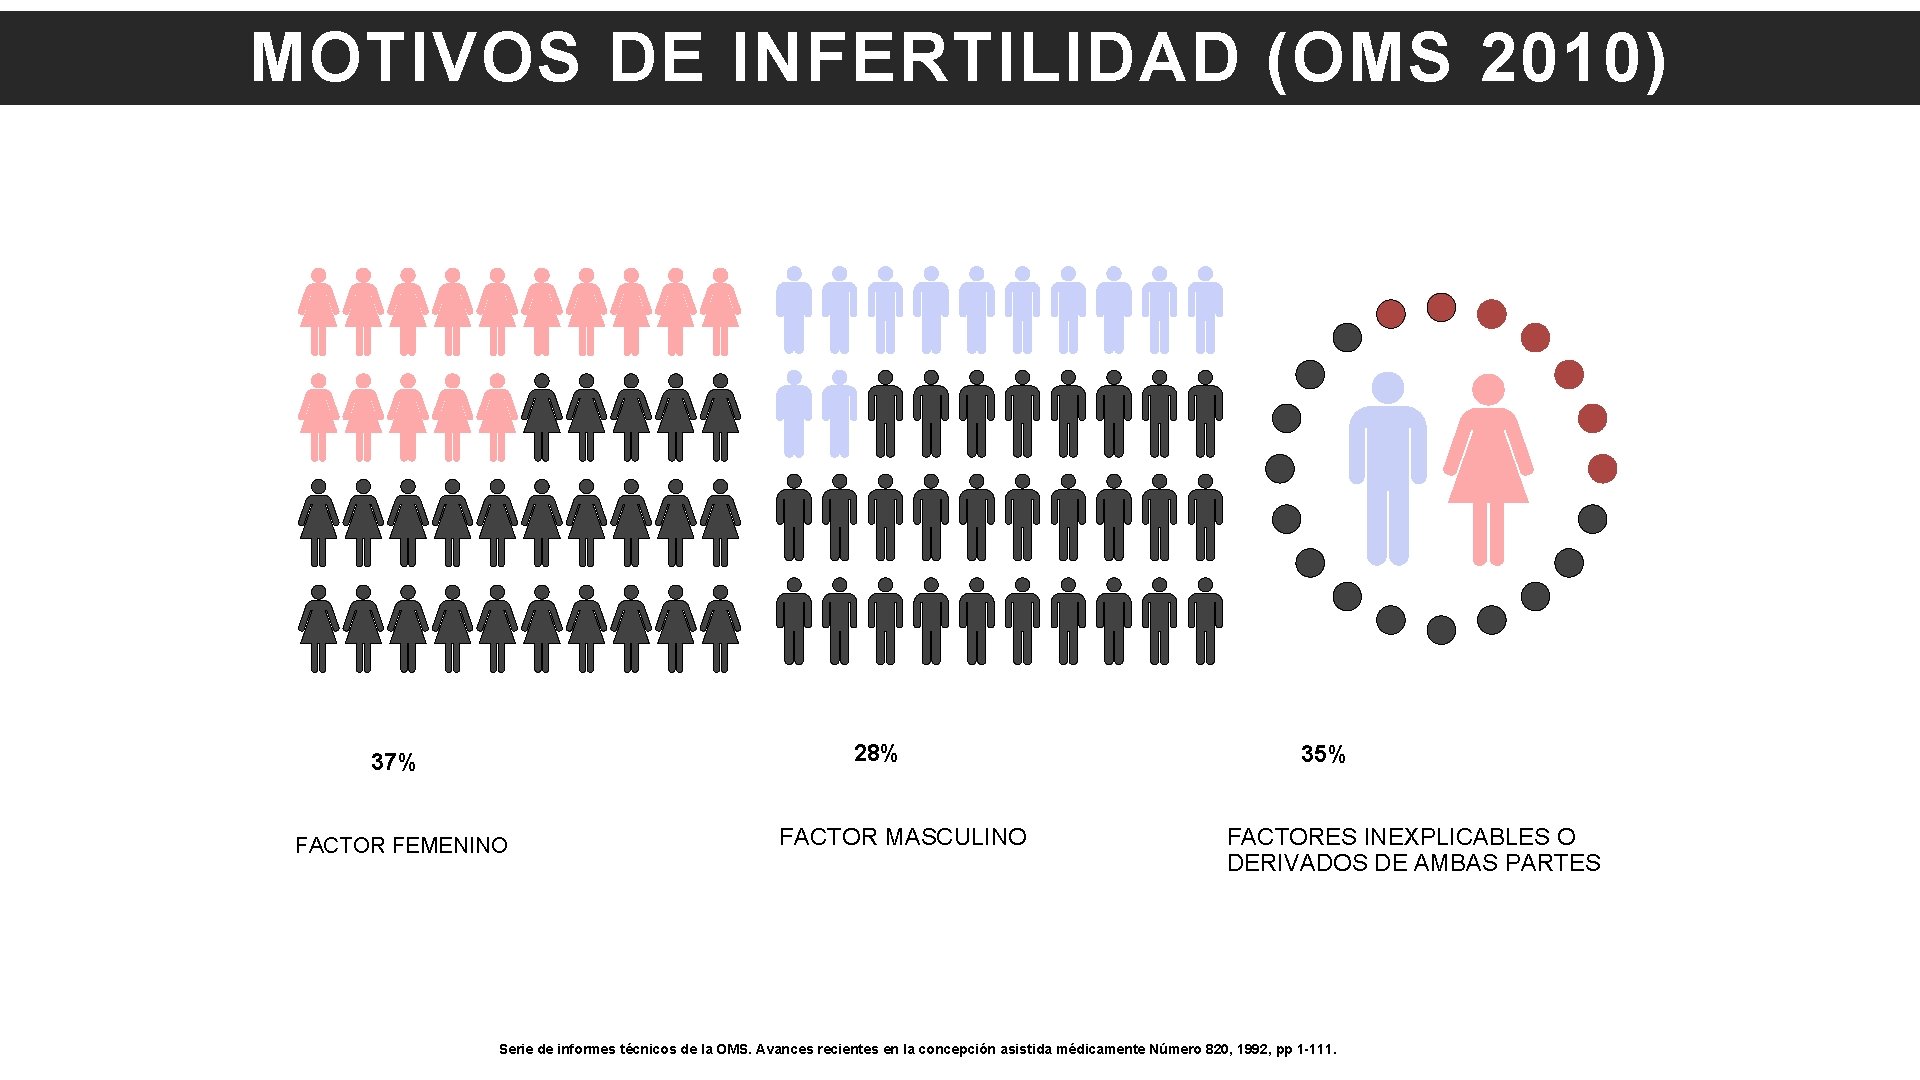 MOTIVOS DE INFERTILIDAD (OMS 2010) 28% 37% FACTOR FEMENINO FACTOR MASCULINO 35% FACTORES INEXPLICABLES